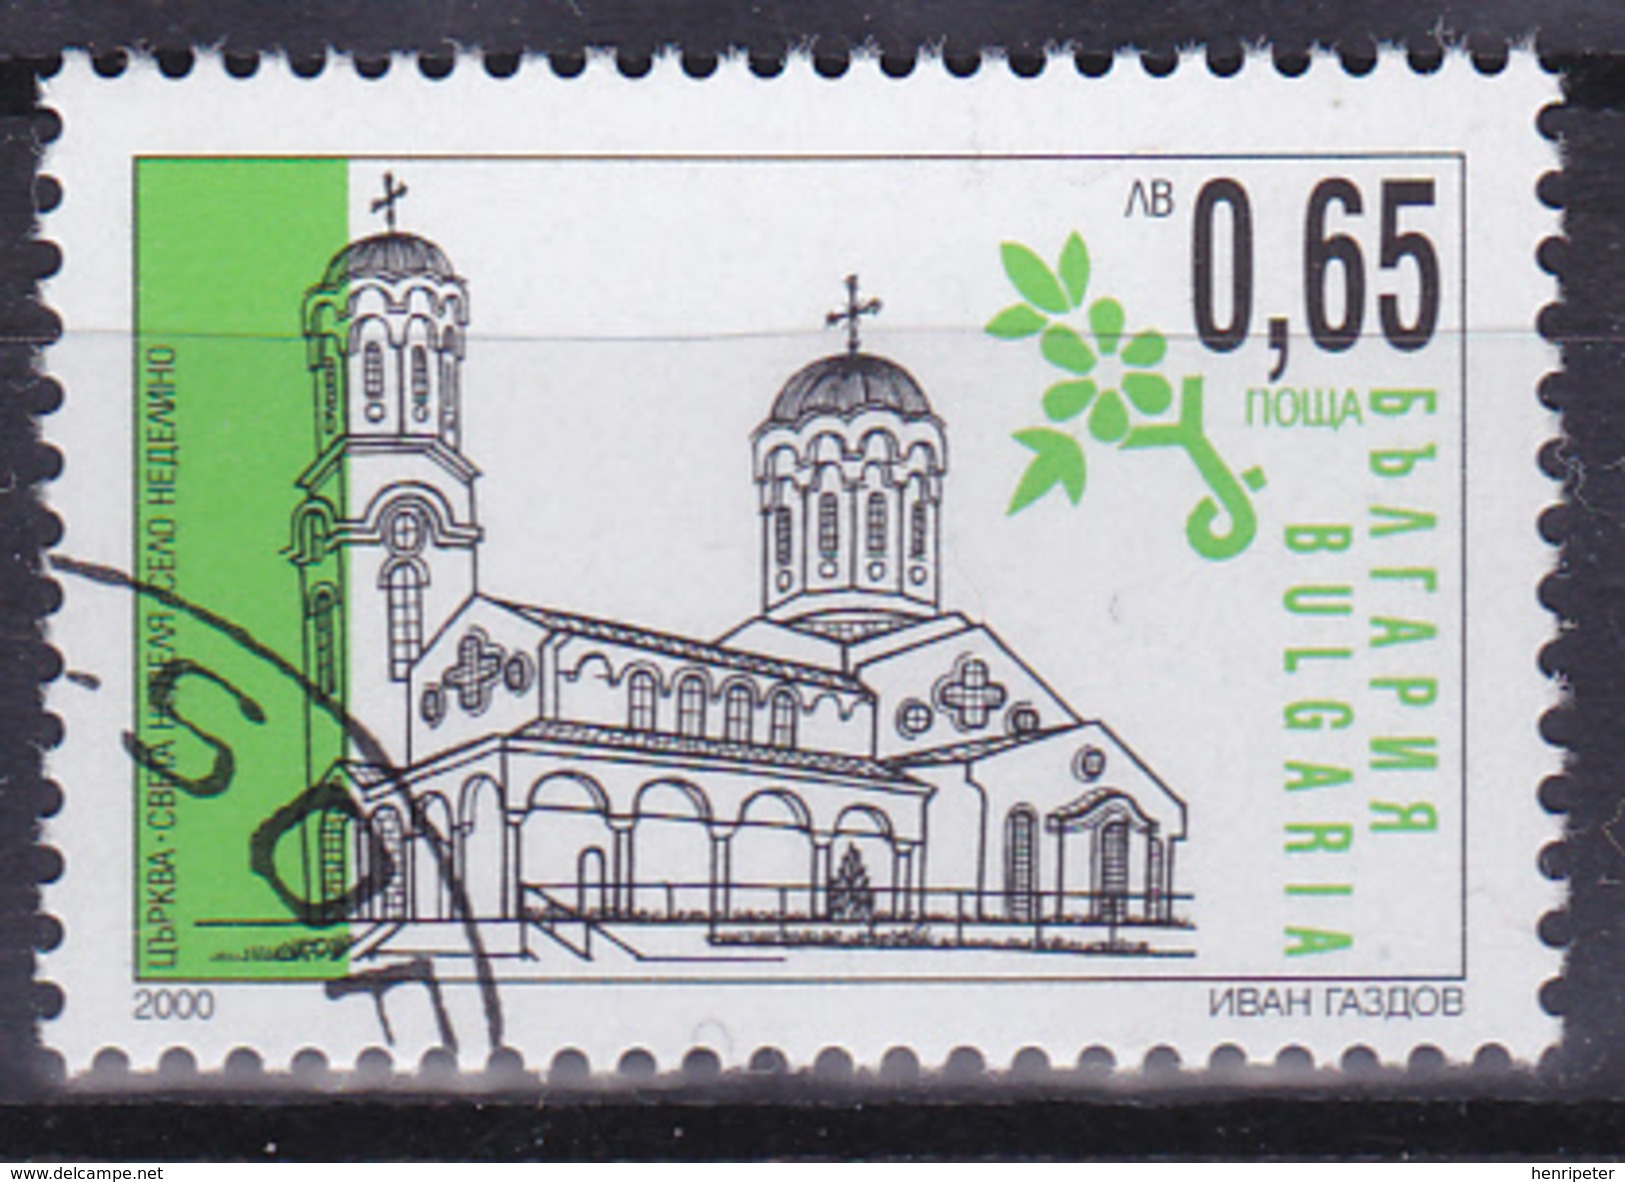 Lot De 2 Timbres-poste Oblitérés - Série Courante Églises - N° 3885-3888 (Yvert) - Bulgarie 2000 - Oblitérés